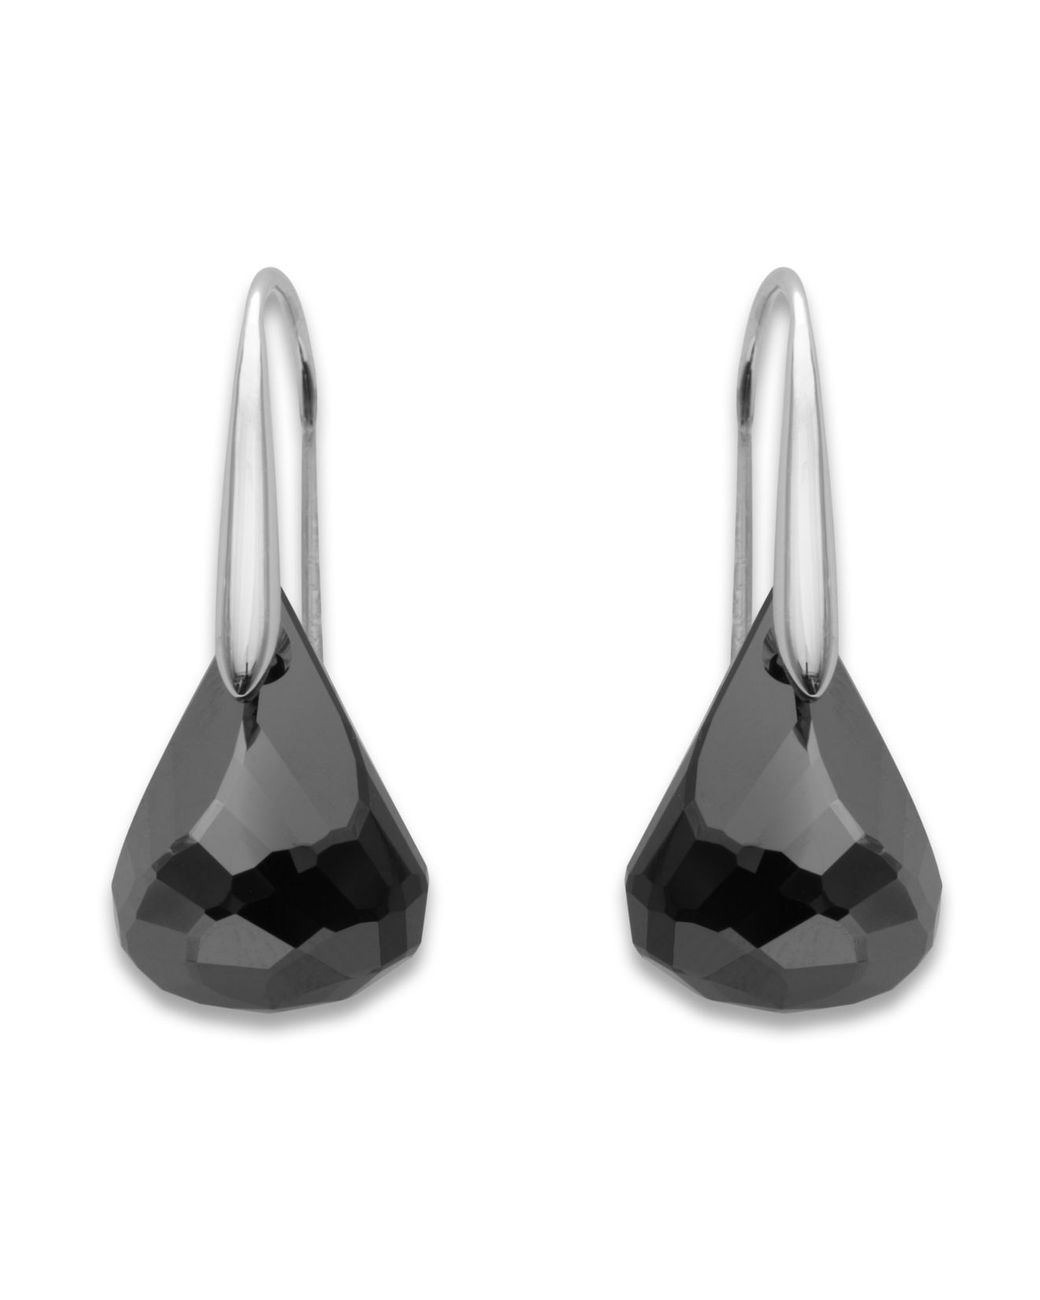 LV Swarovski Crystal Halo Stud Earrings- BLACK – Nomad'r Lifestyle